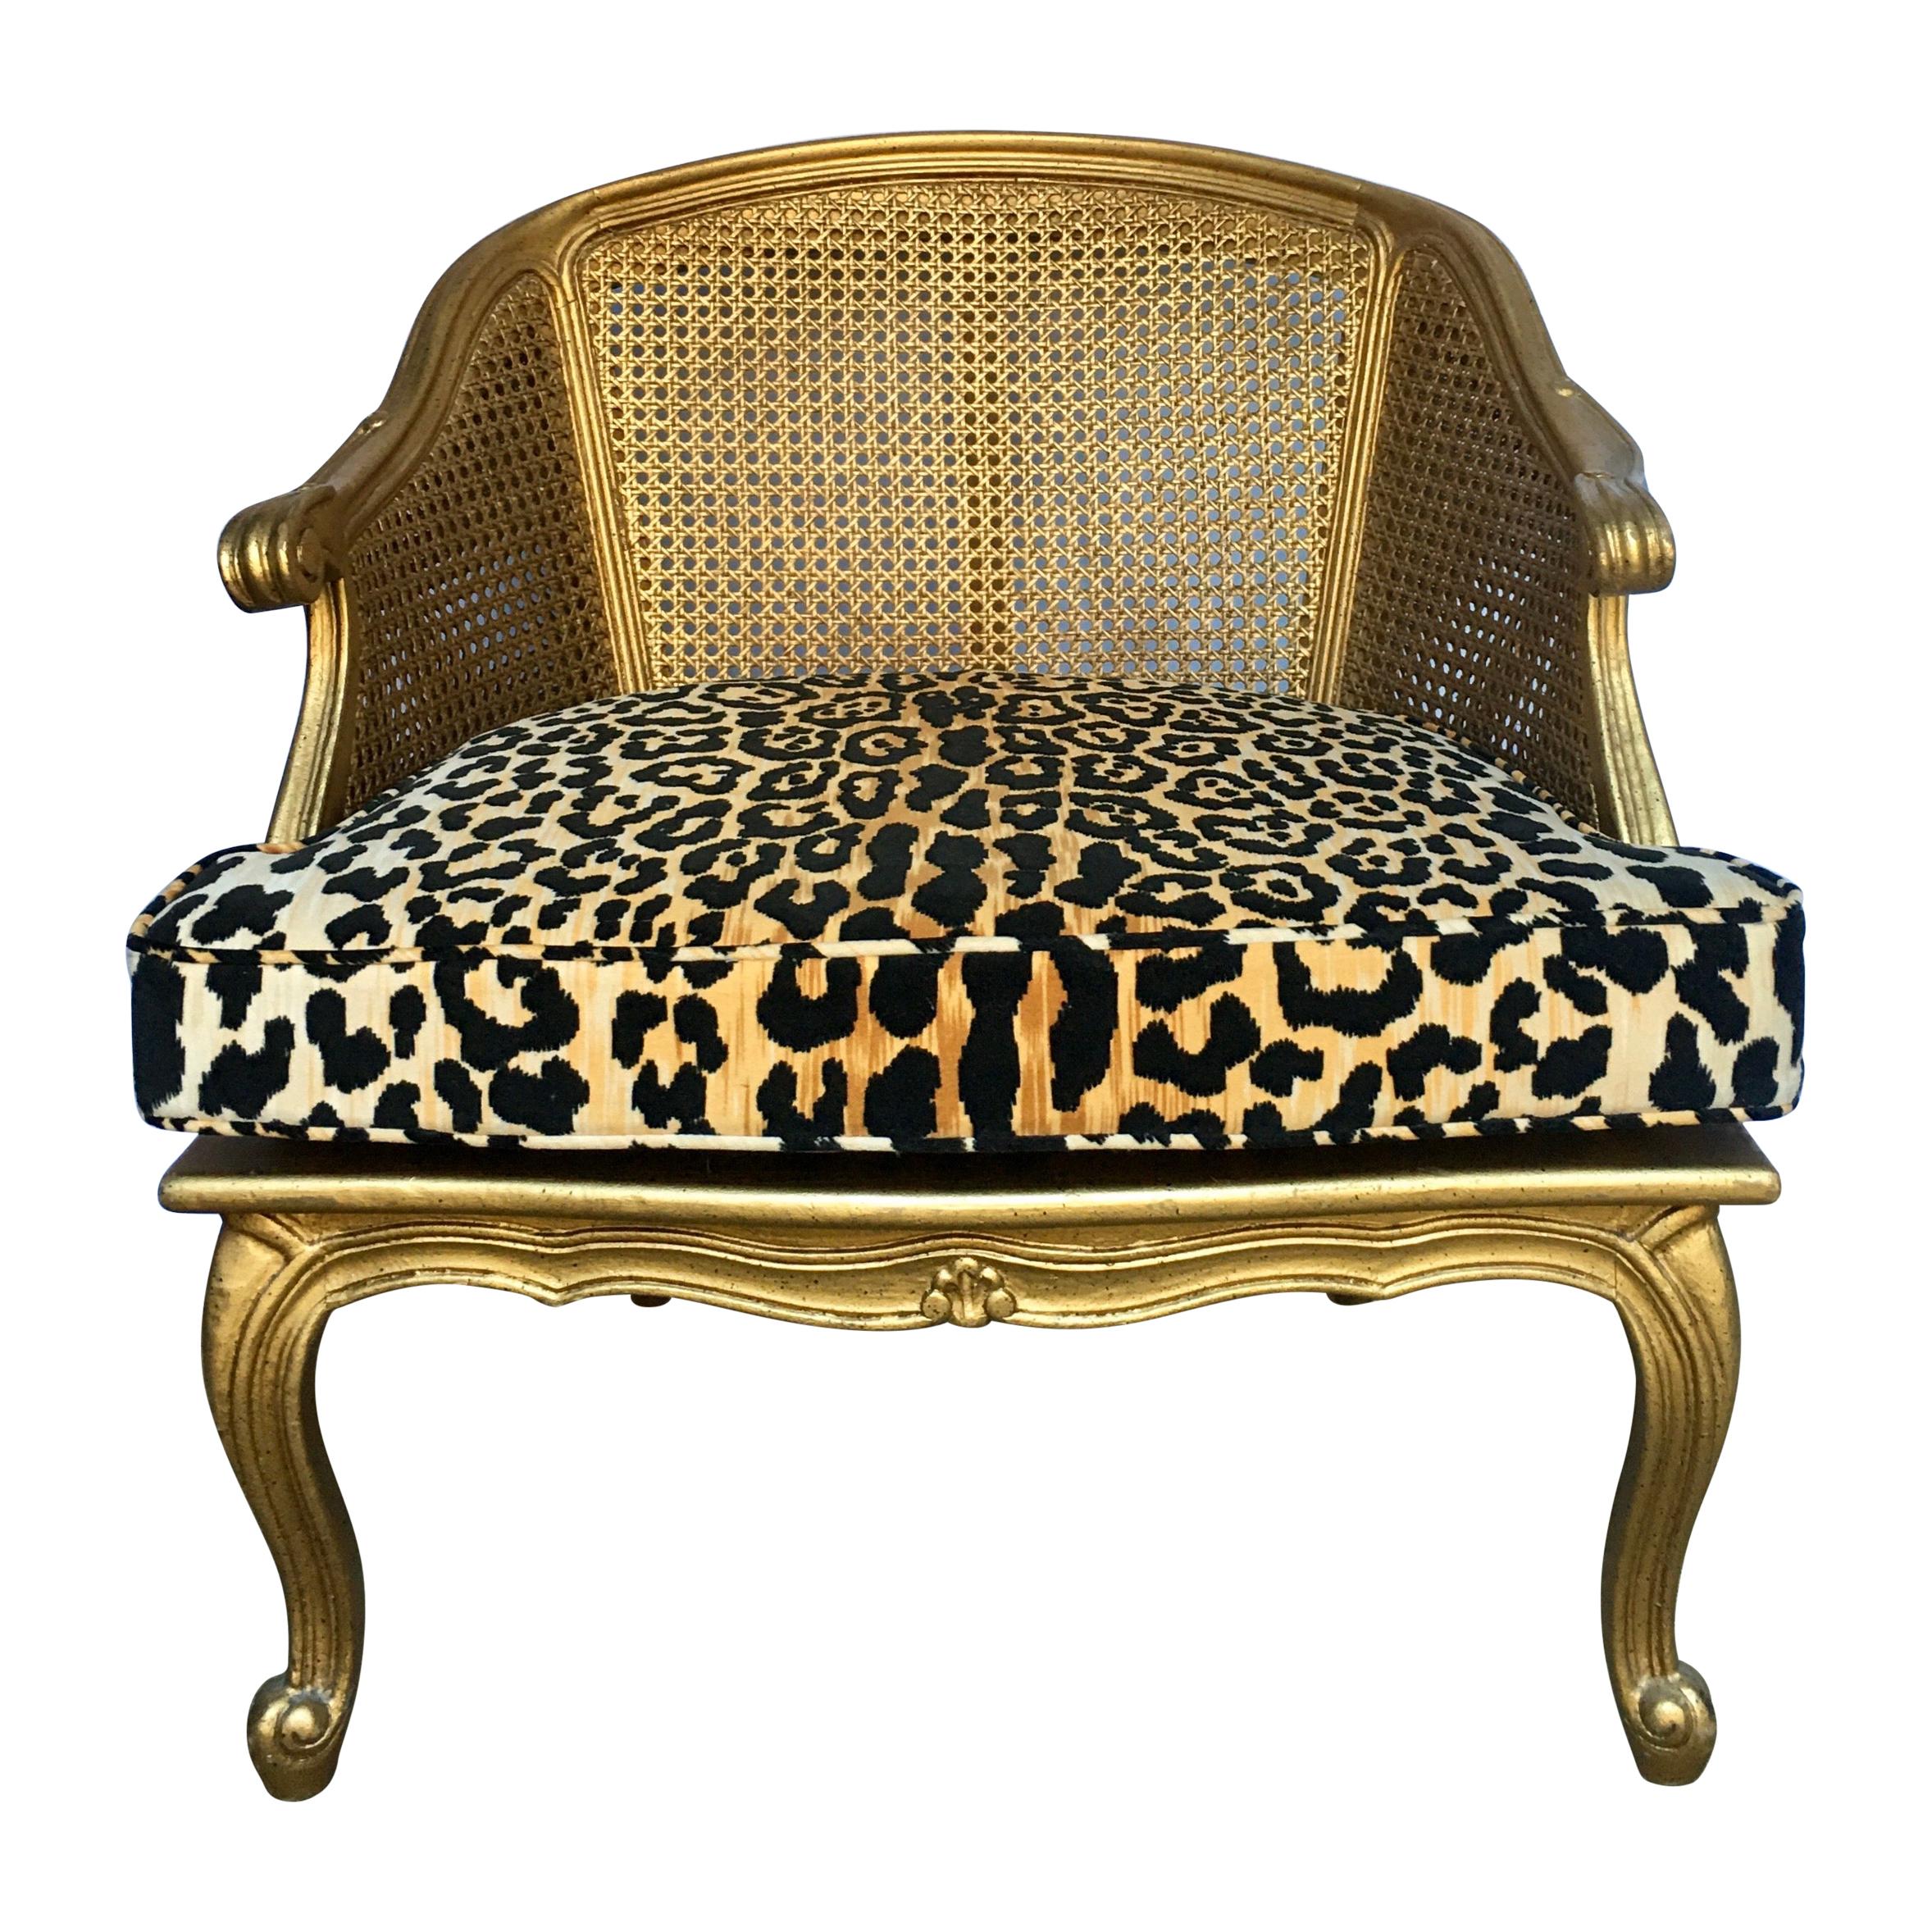 Hollywood Regency Style Woven Gilt Cane Armchair with Animal Print, Spain